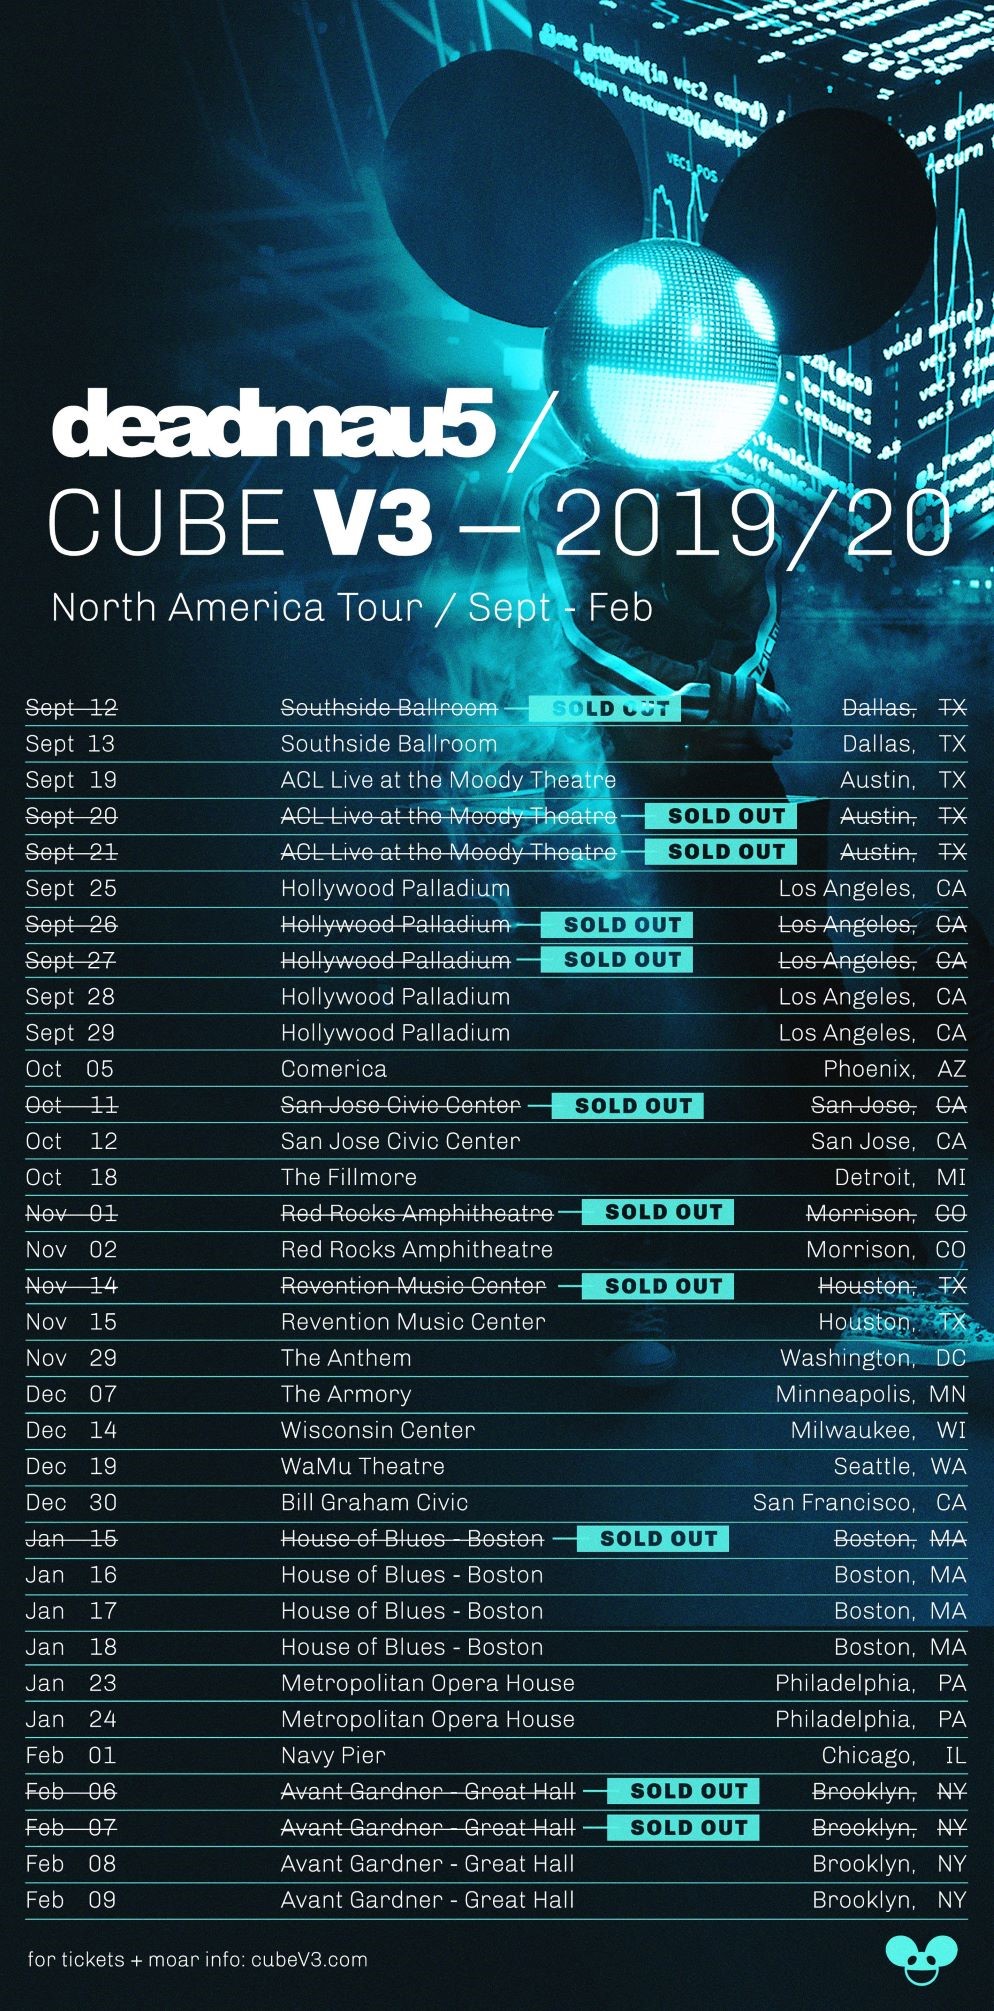 deadmau5 - Cube V3 Tour - North America 2019/20